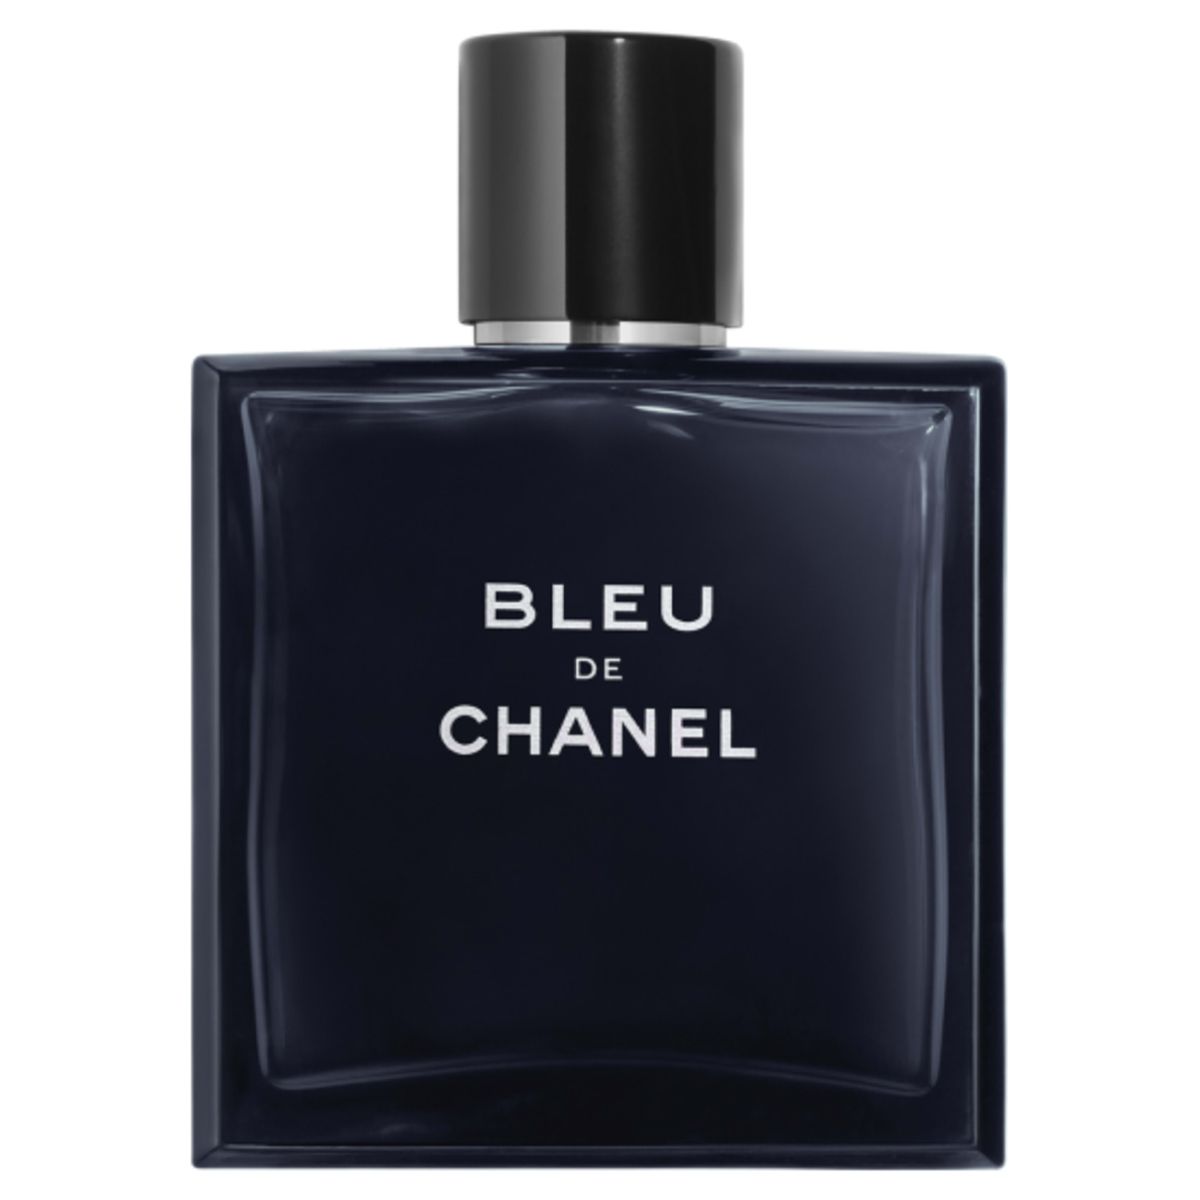  Chanel Bleu de Chanel Eau de Toilette 